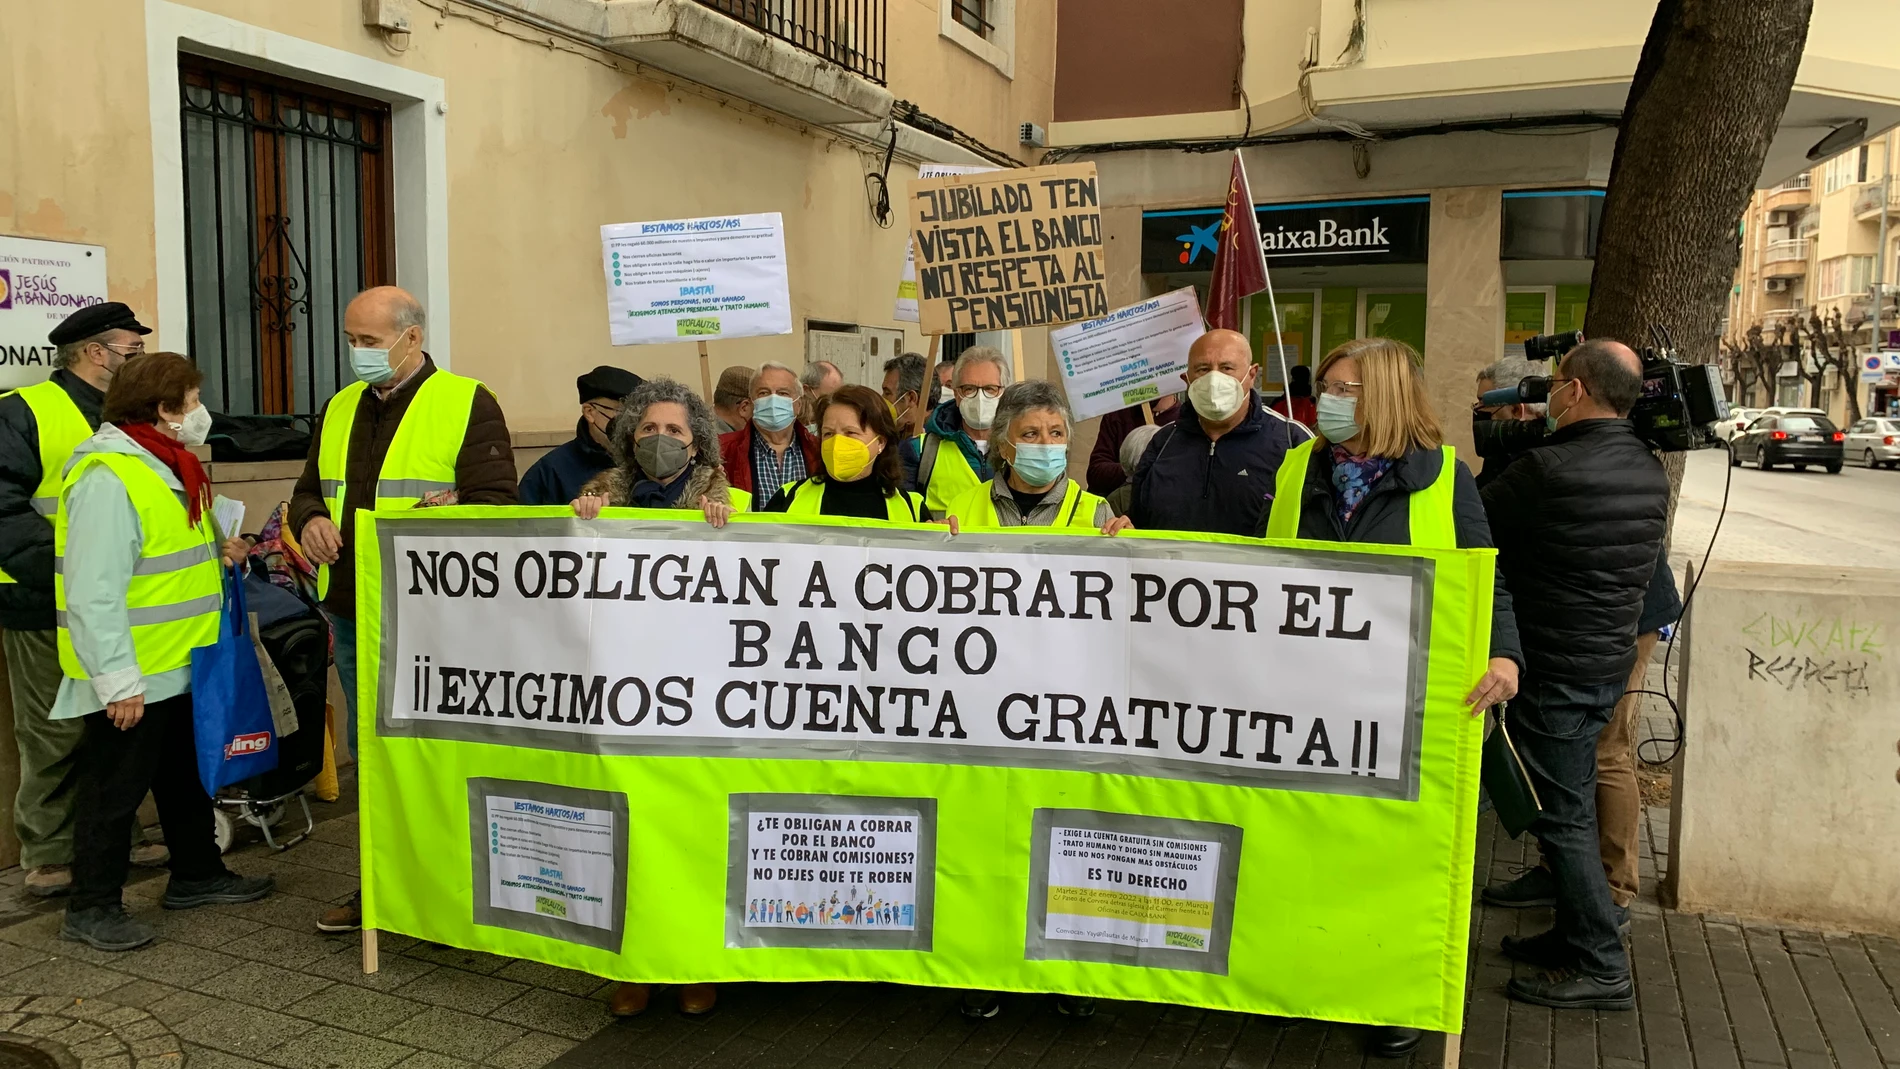 La plataforma Yayoflautas Murcia se manifiesta por la exclusión financiera ante una sucursal bancaria en Murcia a día 25 de enero de 2021 (@MariaMarinMart)